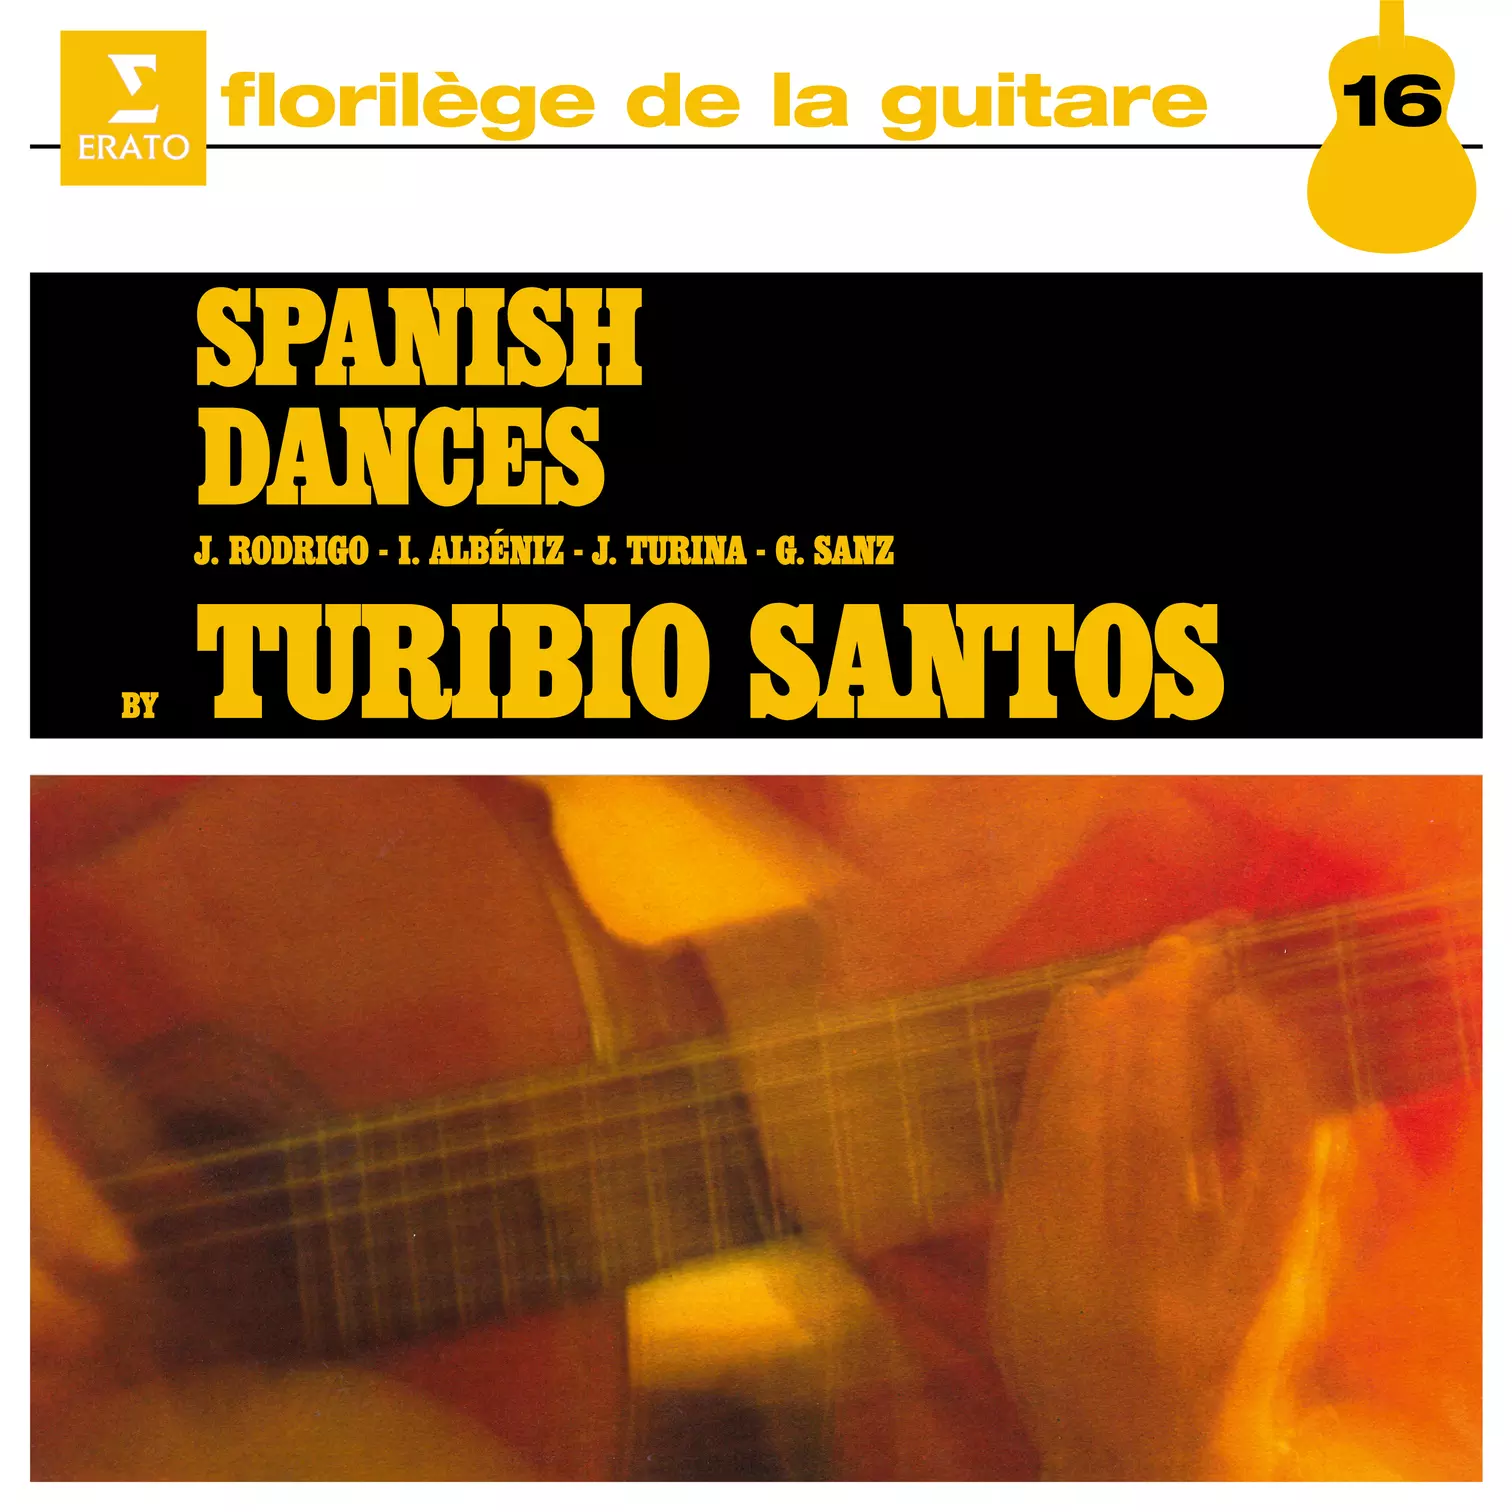 Spanish Dances, Vol. 1